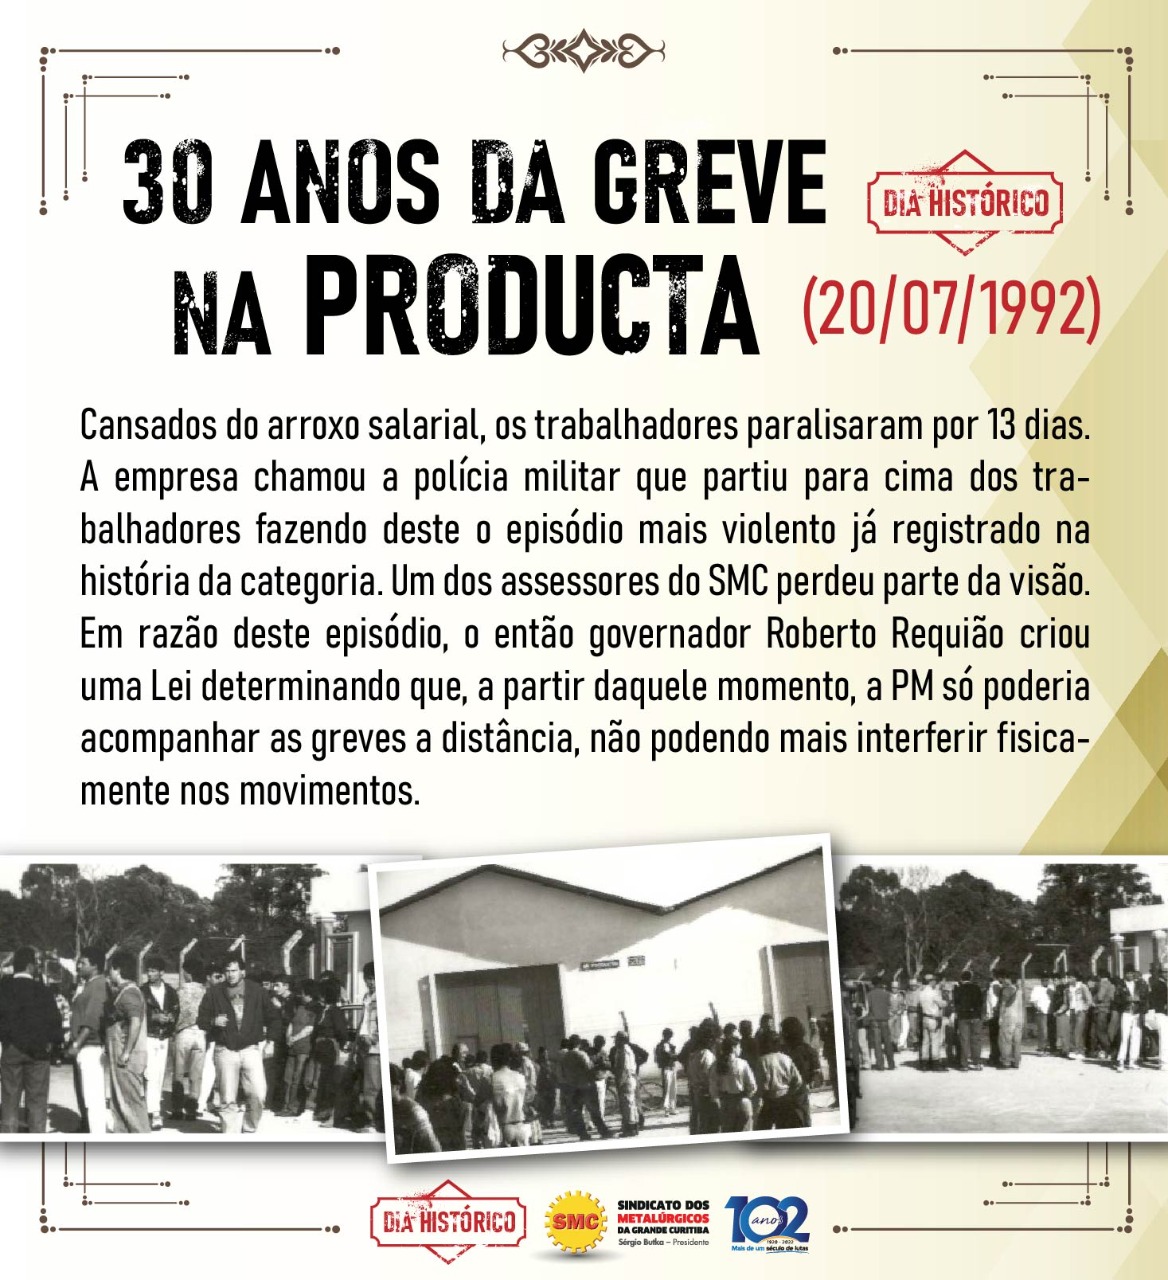 GREVE HISTÓRICA DA PRODUCTA COMPLETA 30 ANOS